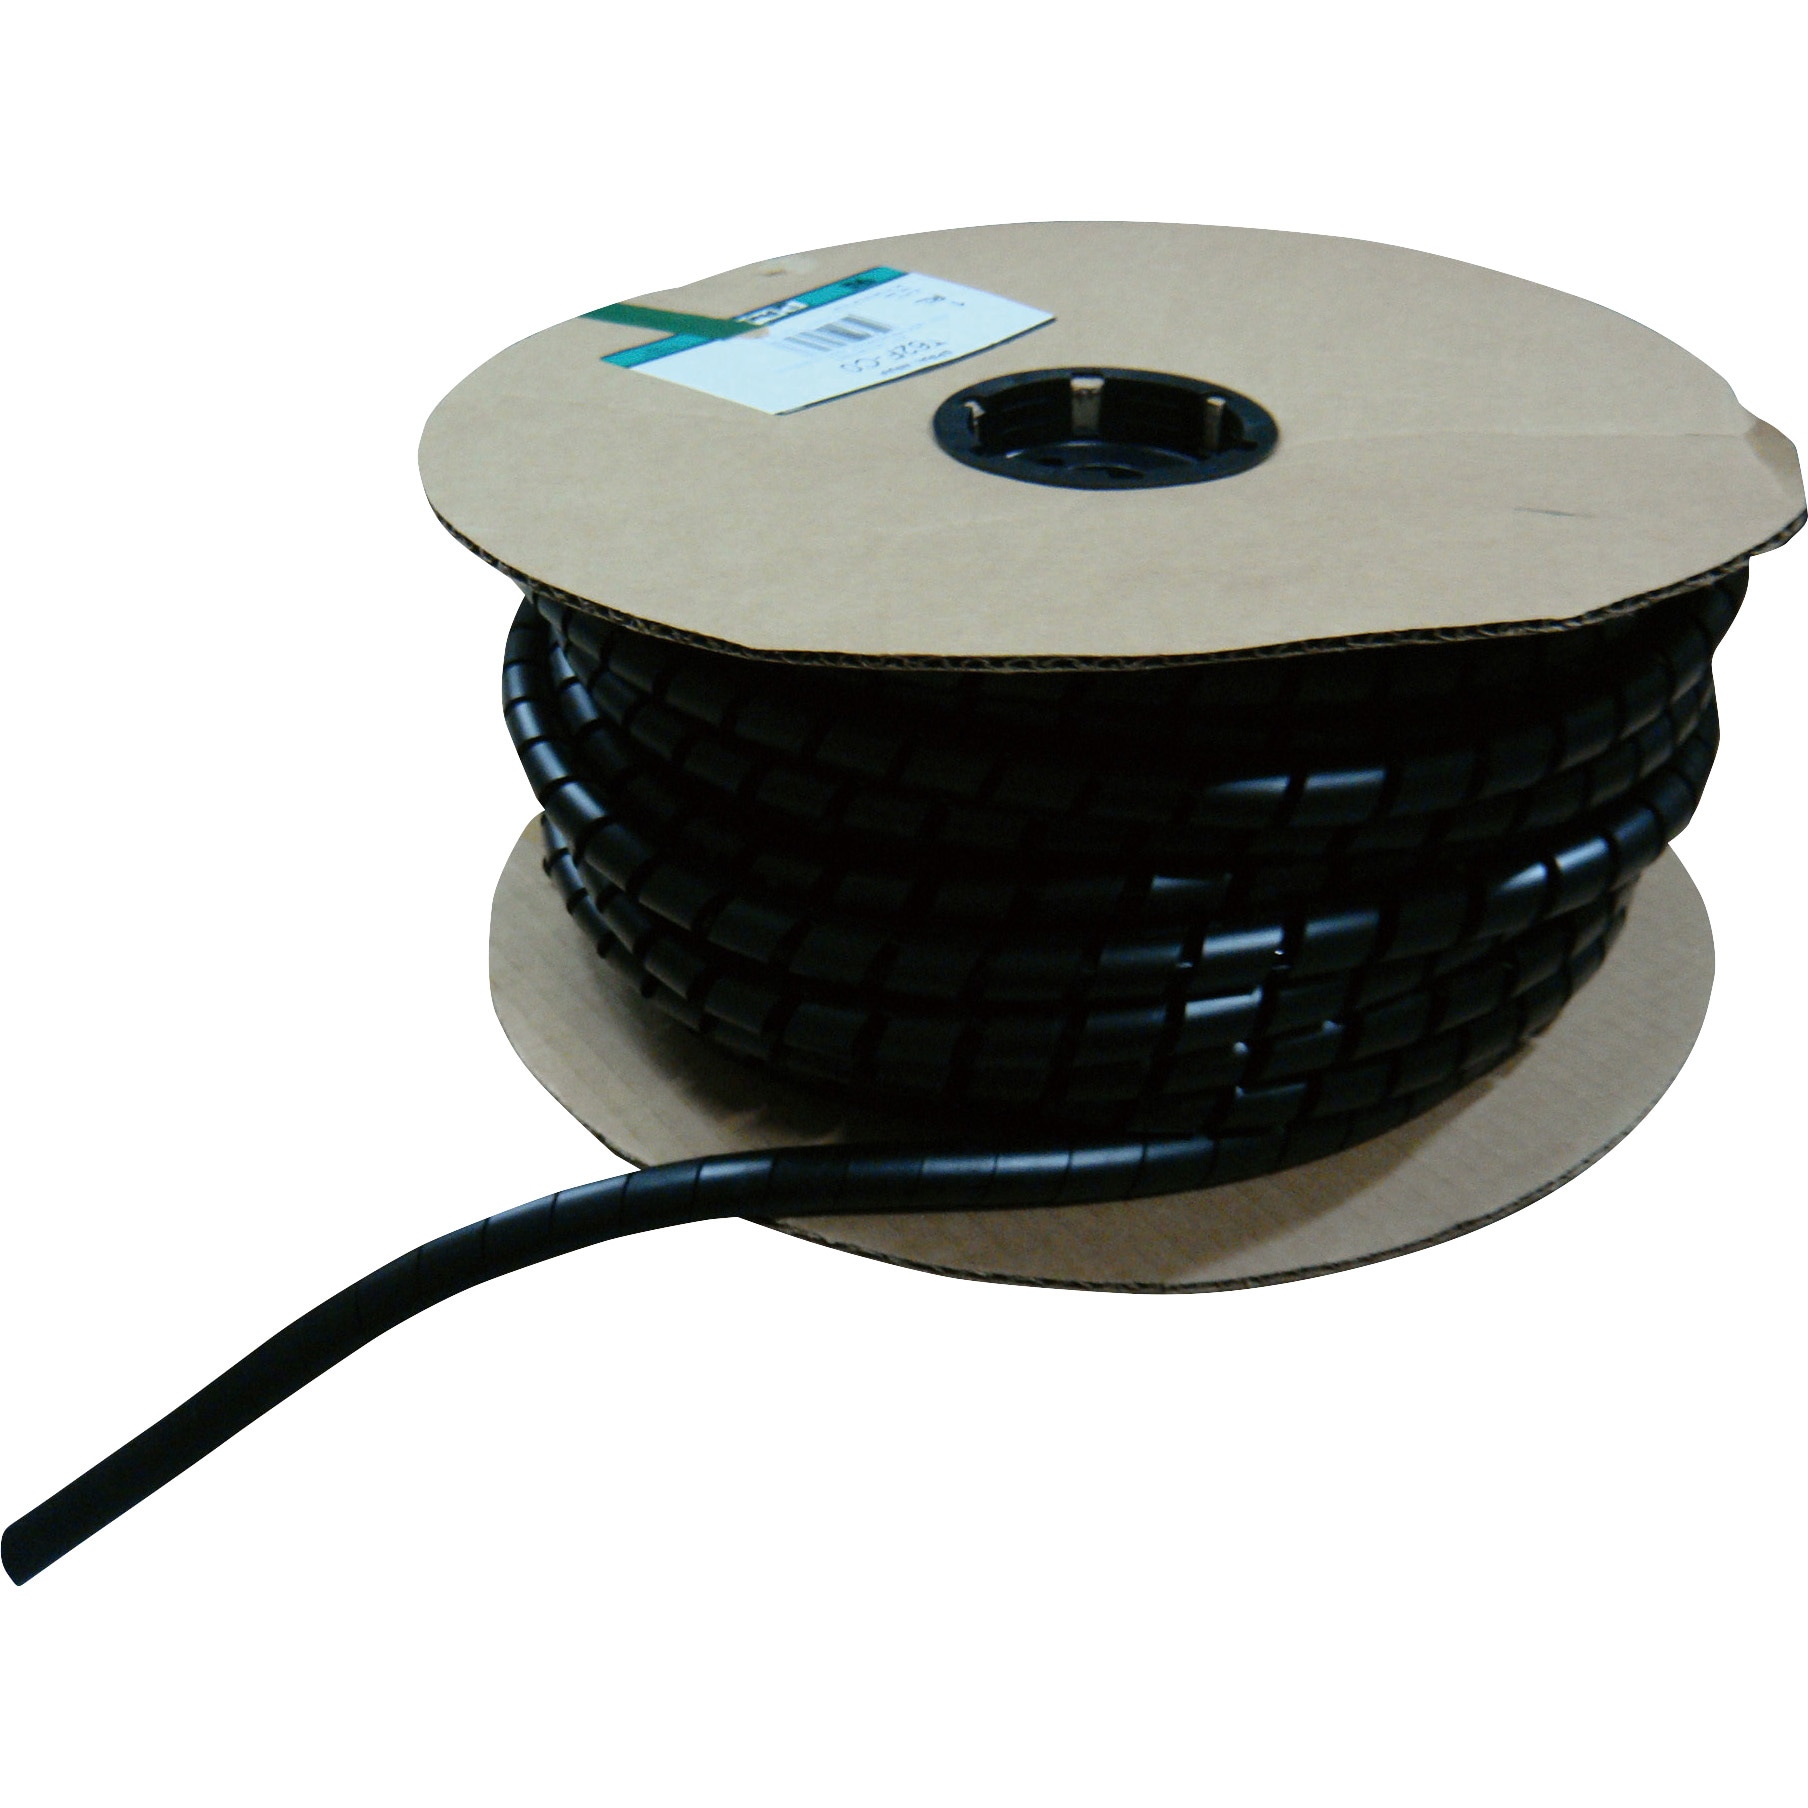 パンドウイット 電線保護チューブ スリット型スパイラル パンラップ 束